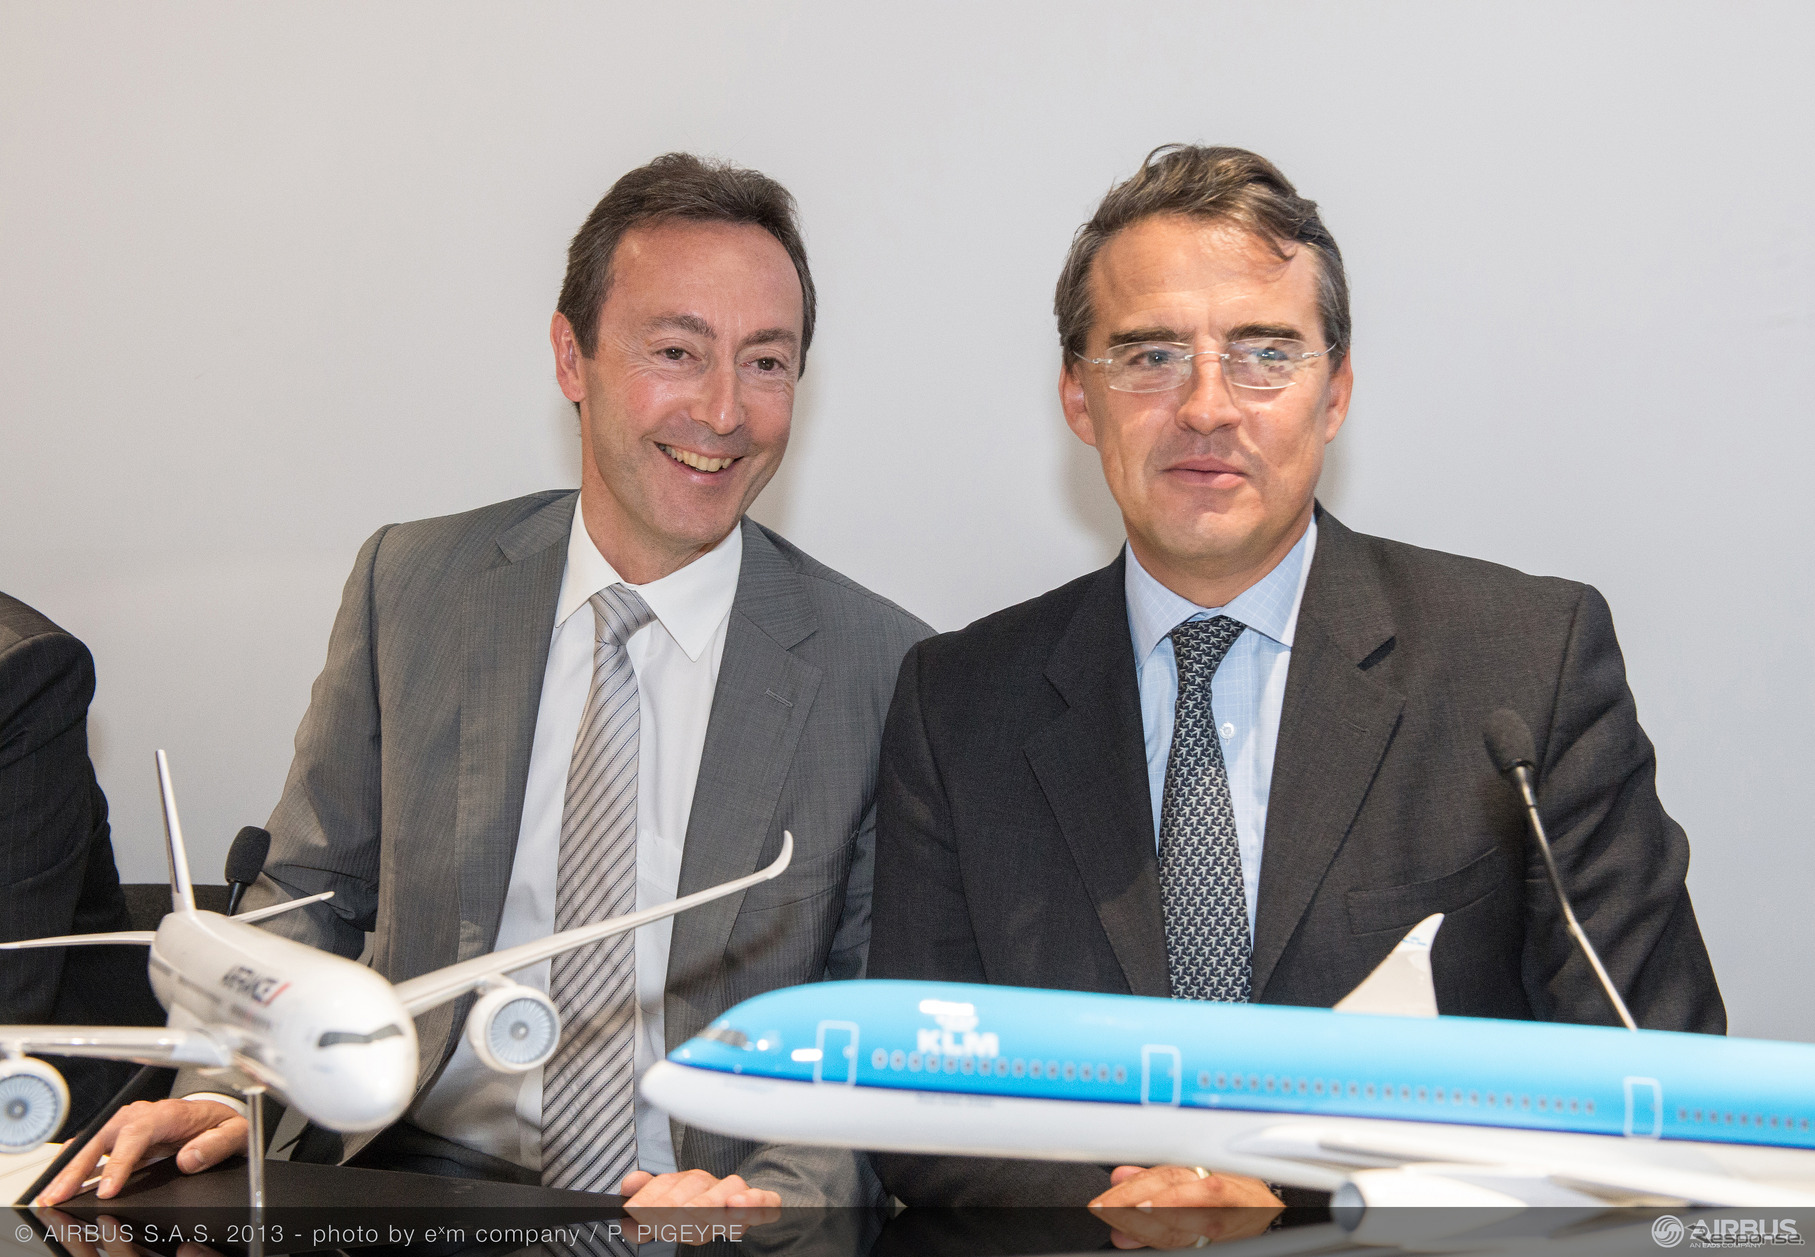 エール・フランス‐KLMとの合意